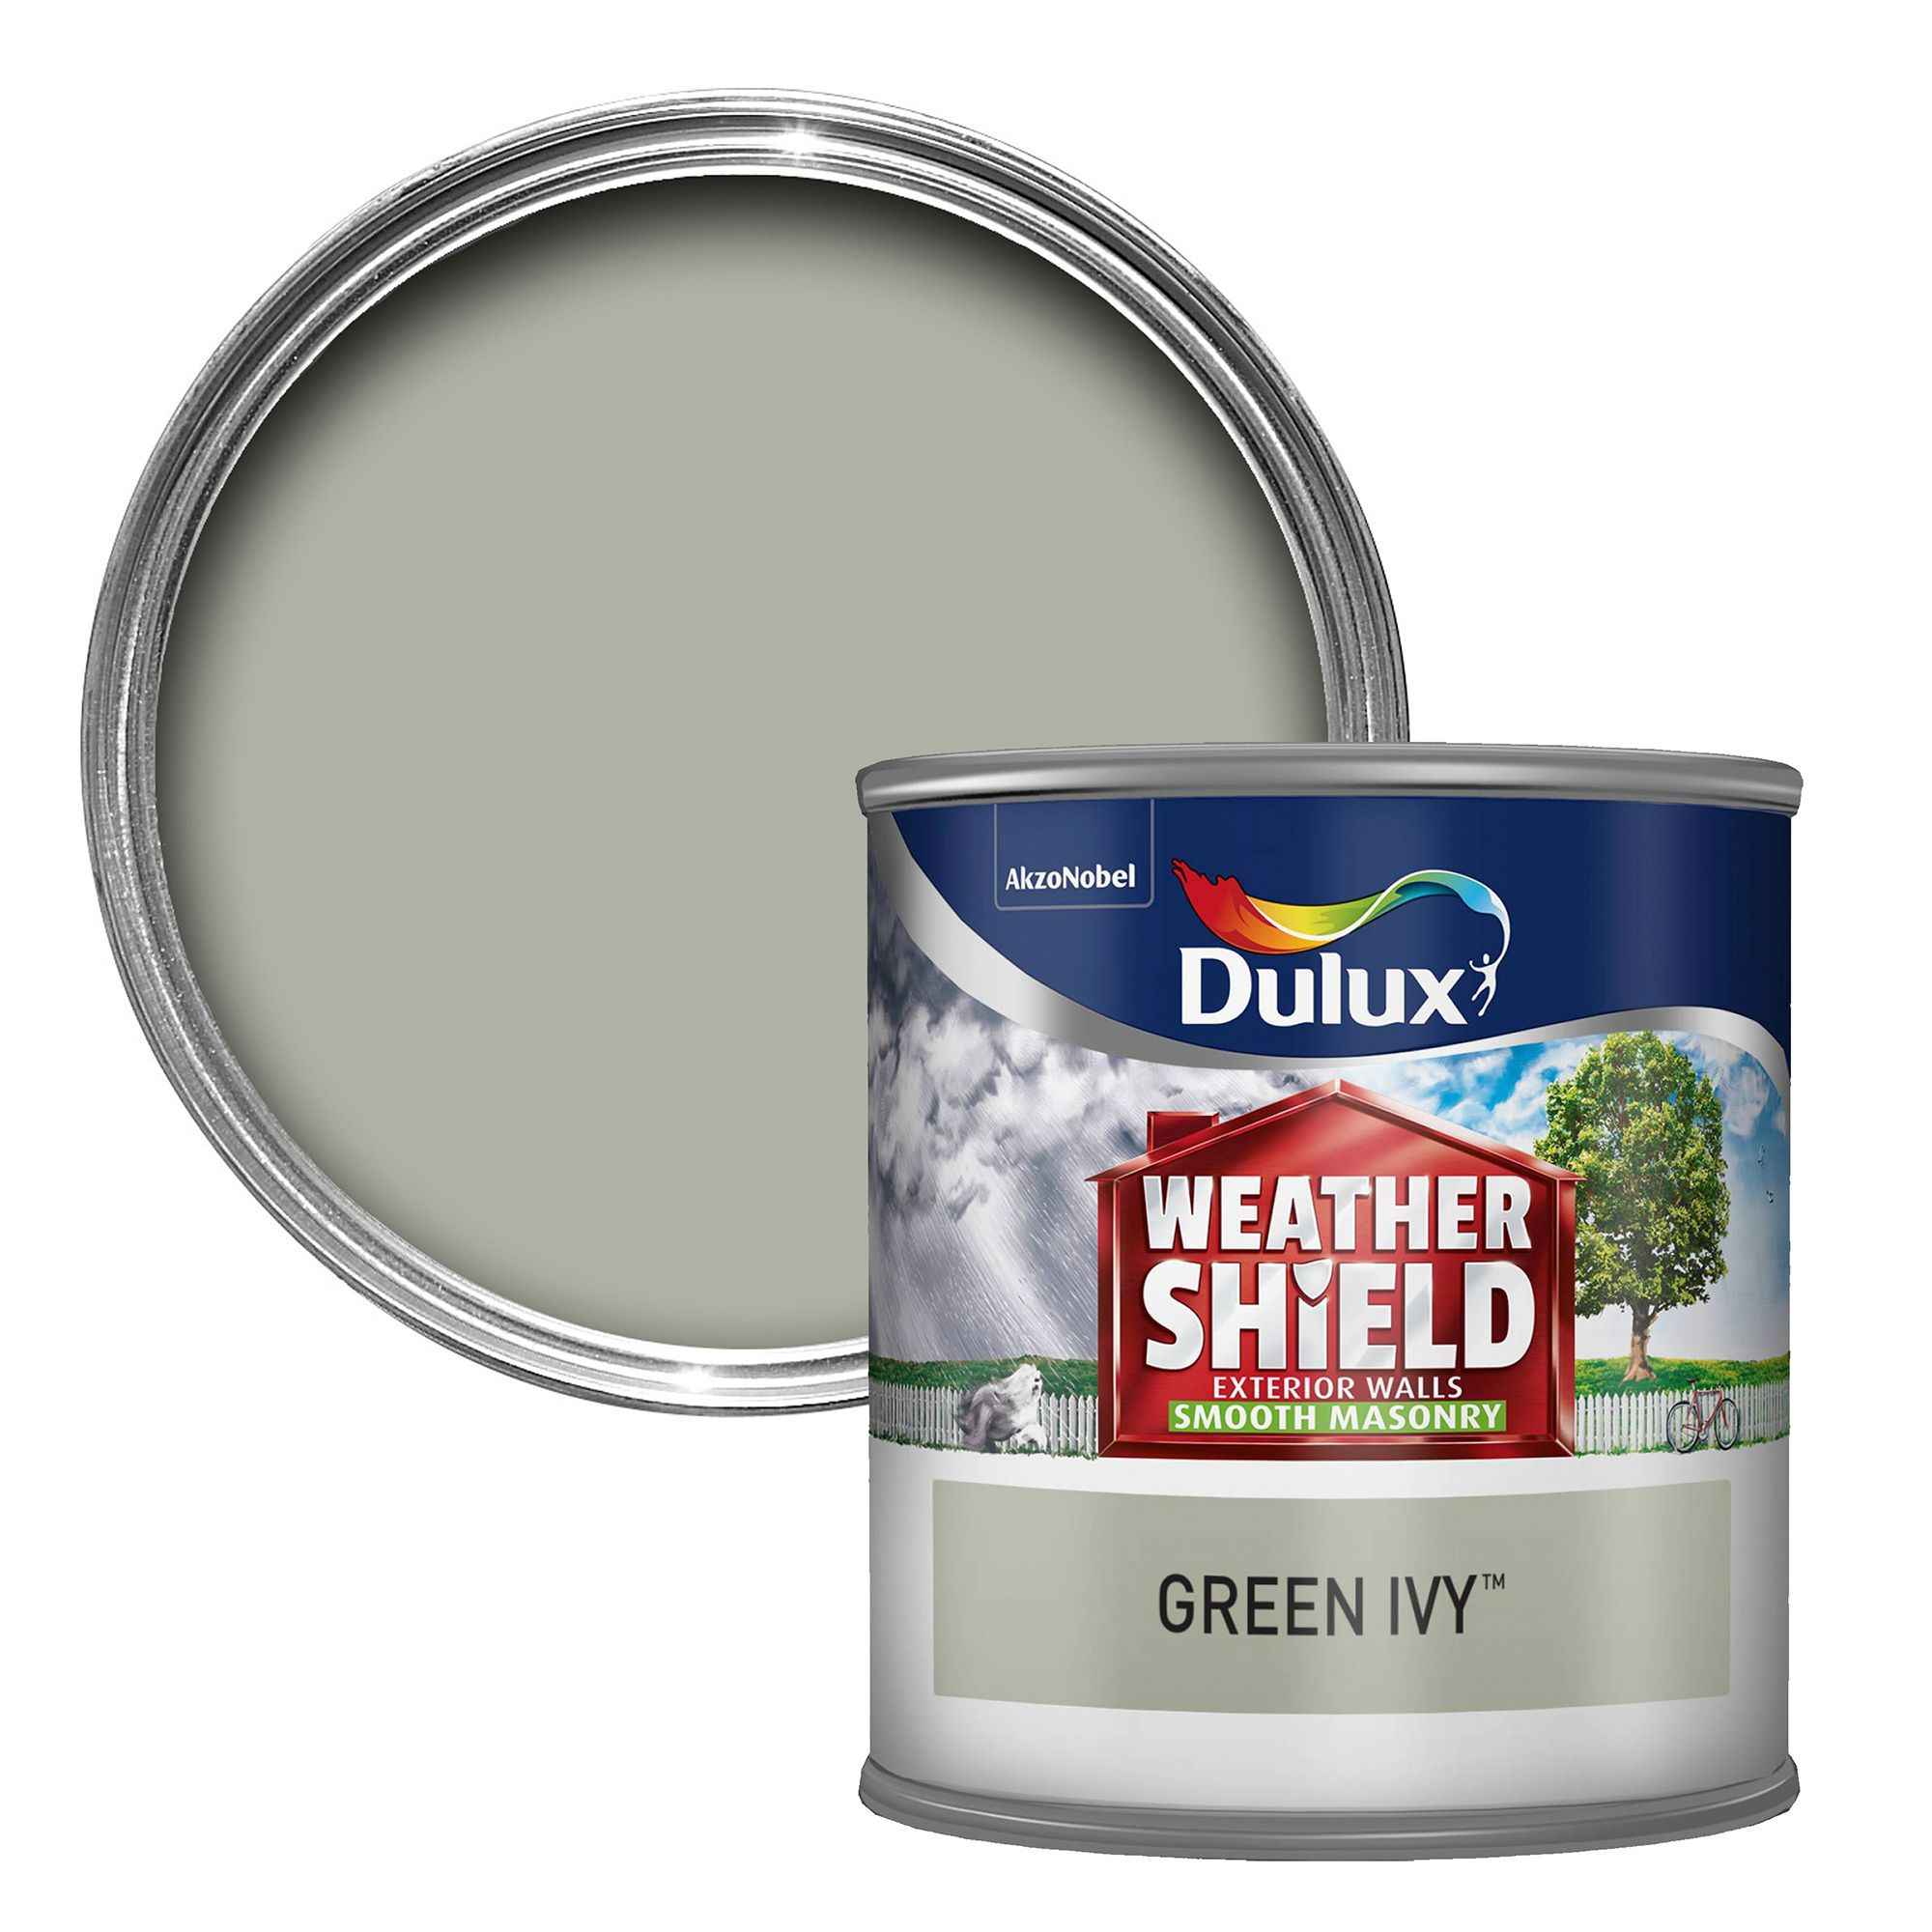  Dulux  Weathershield  Green Ivy Smooth Matt Masonry  Paint  0 